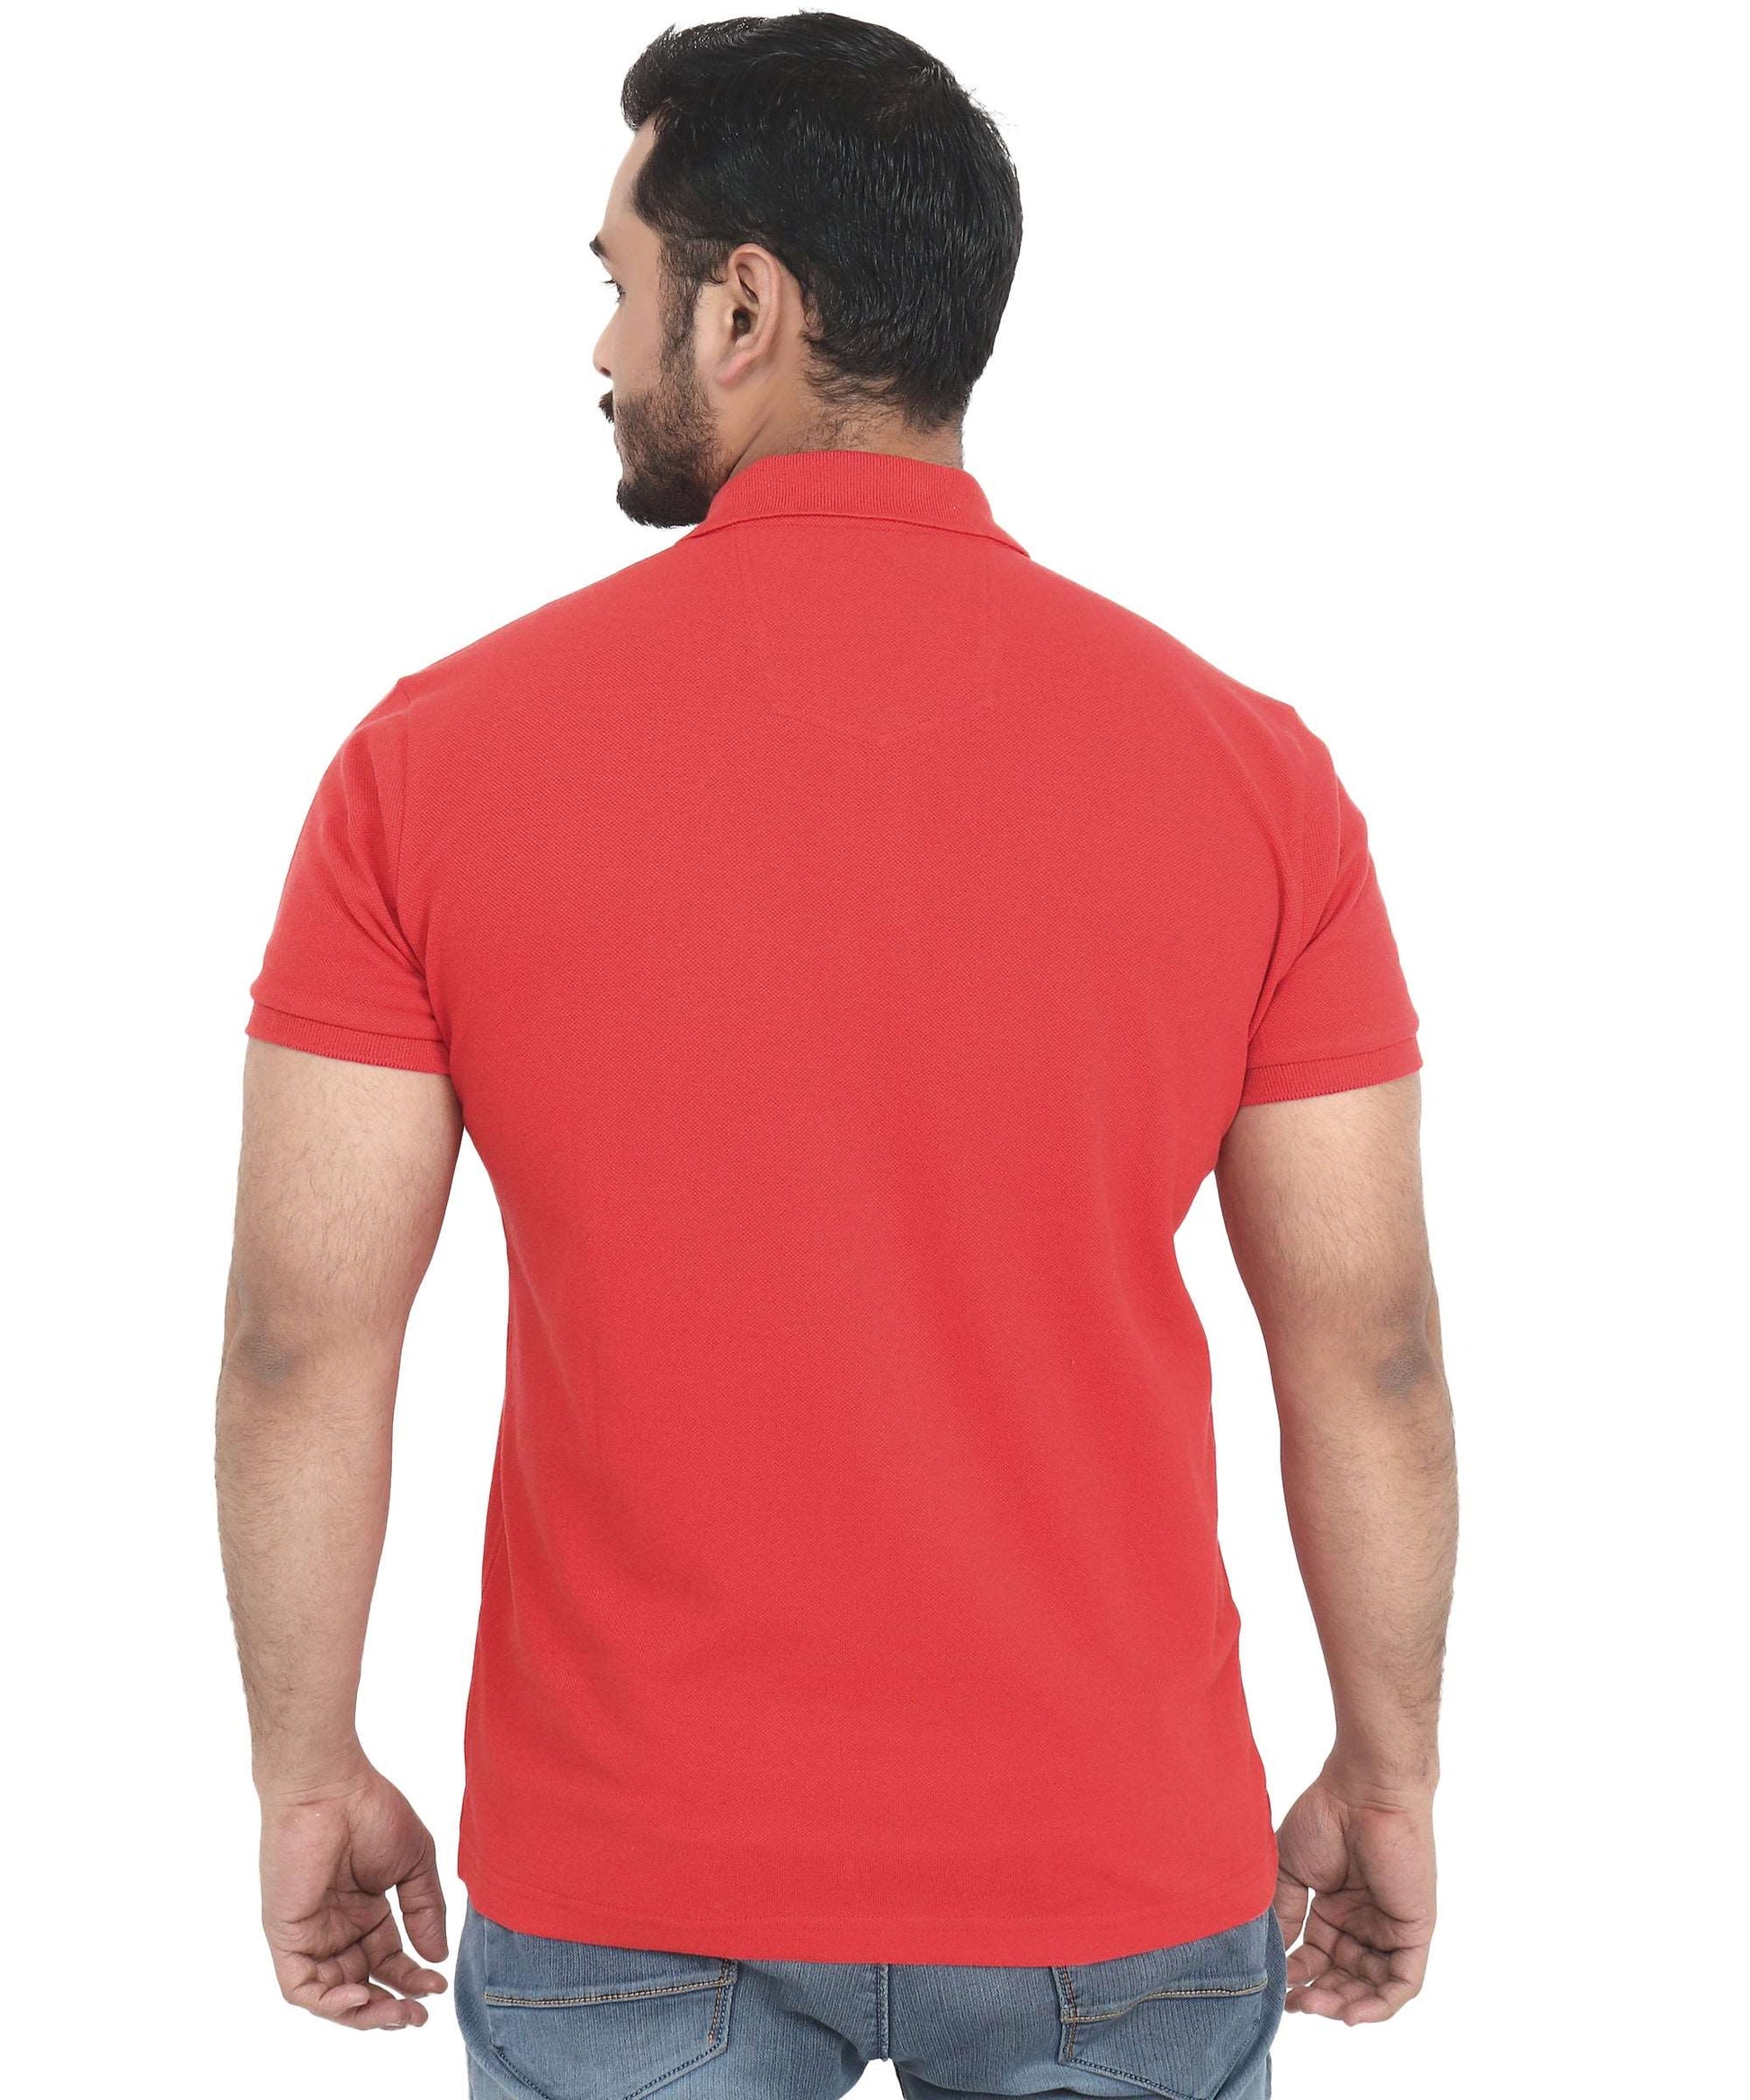 Triple Dot Double Pique Red Polycotton Premium Polo T shirt for Men